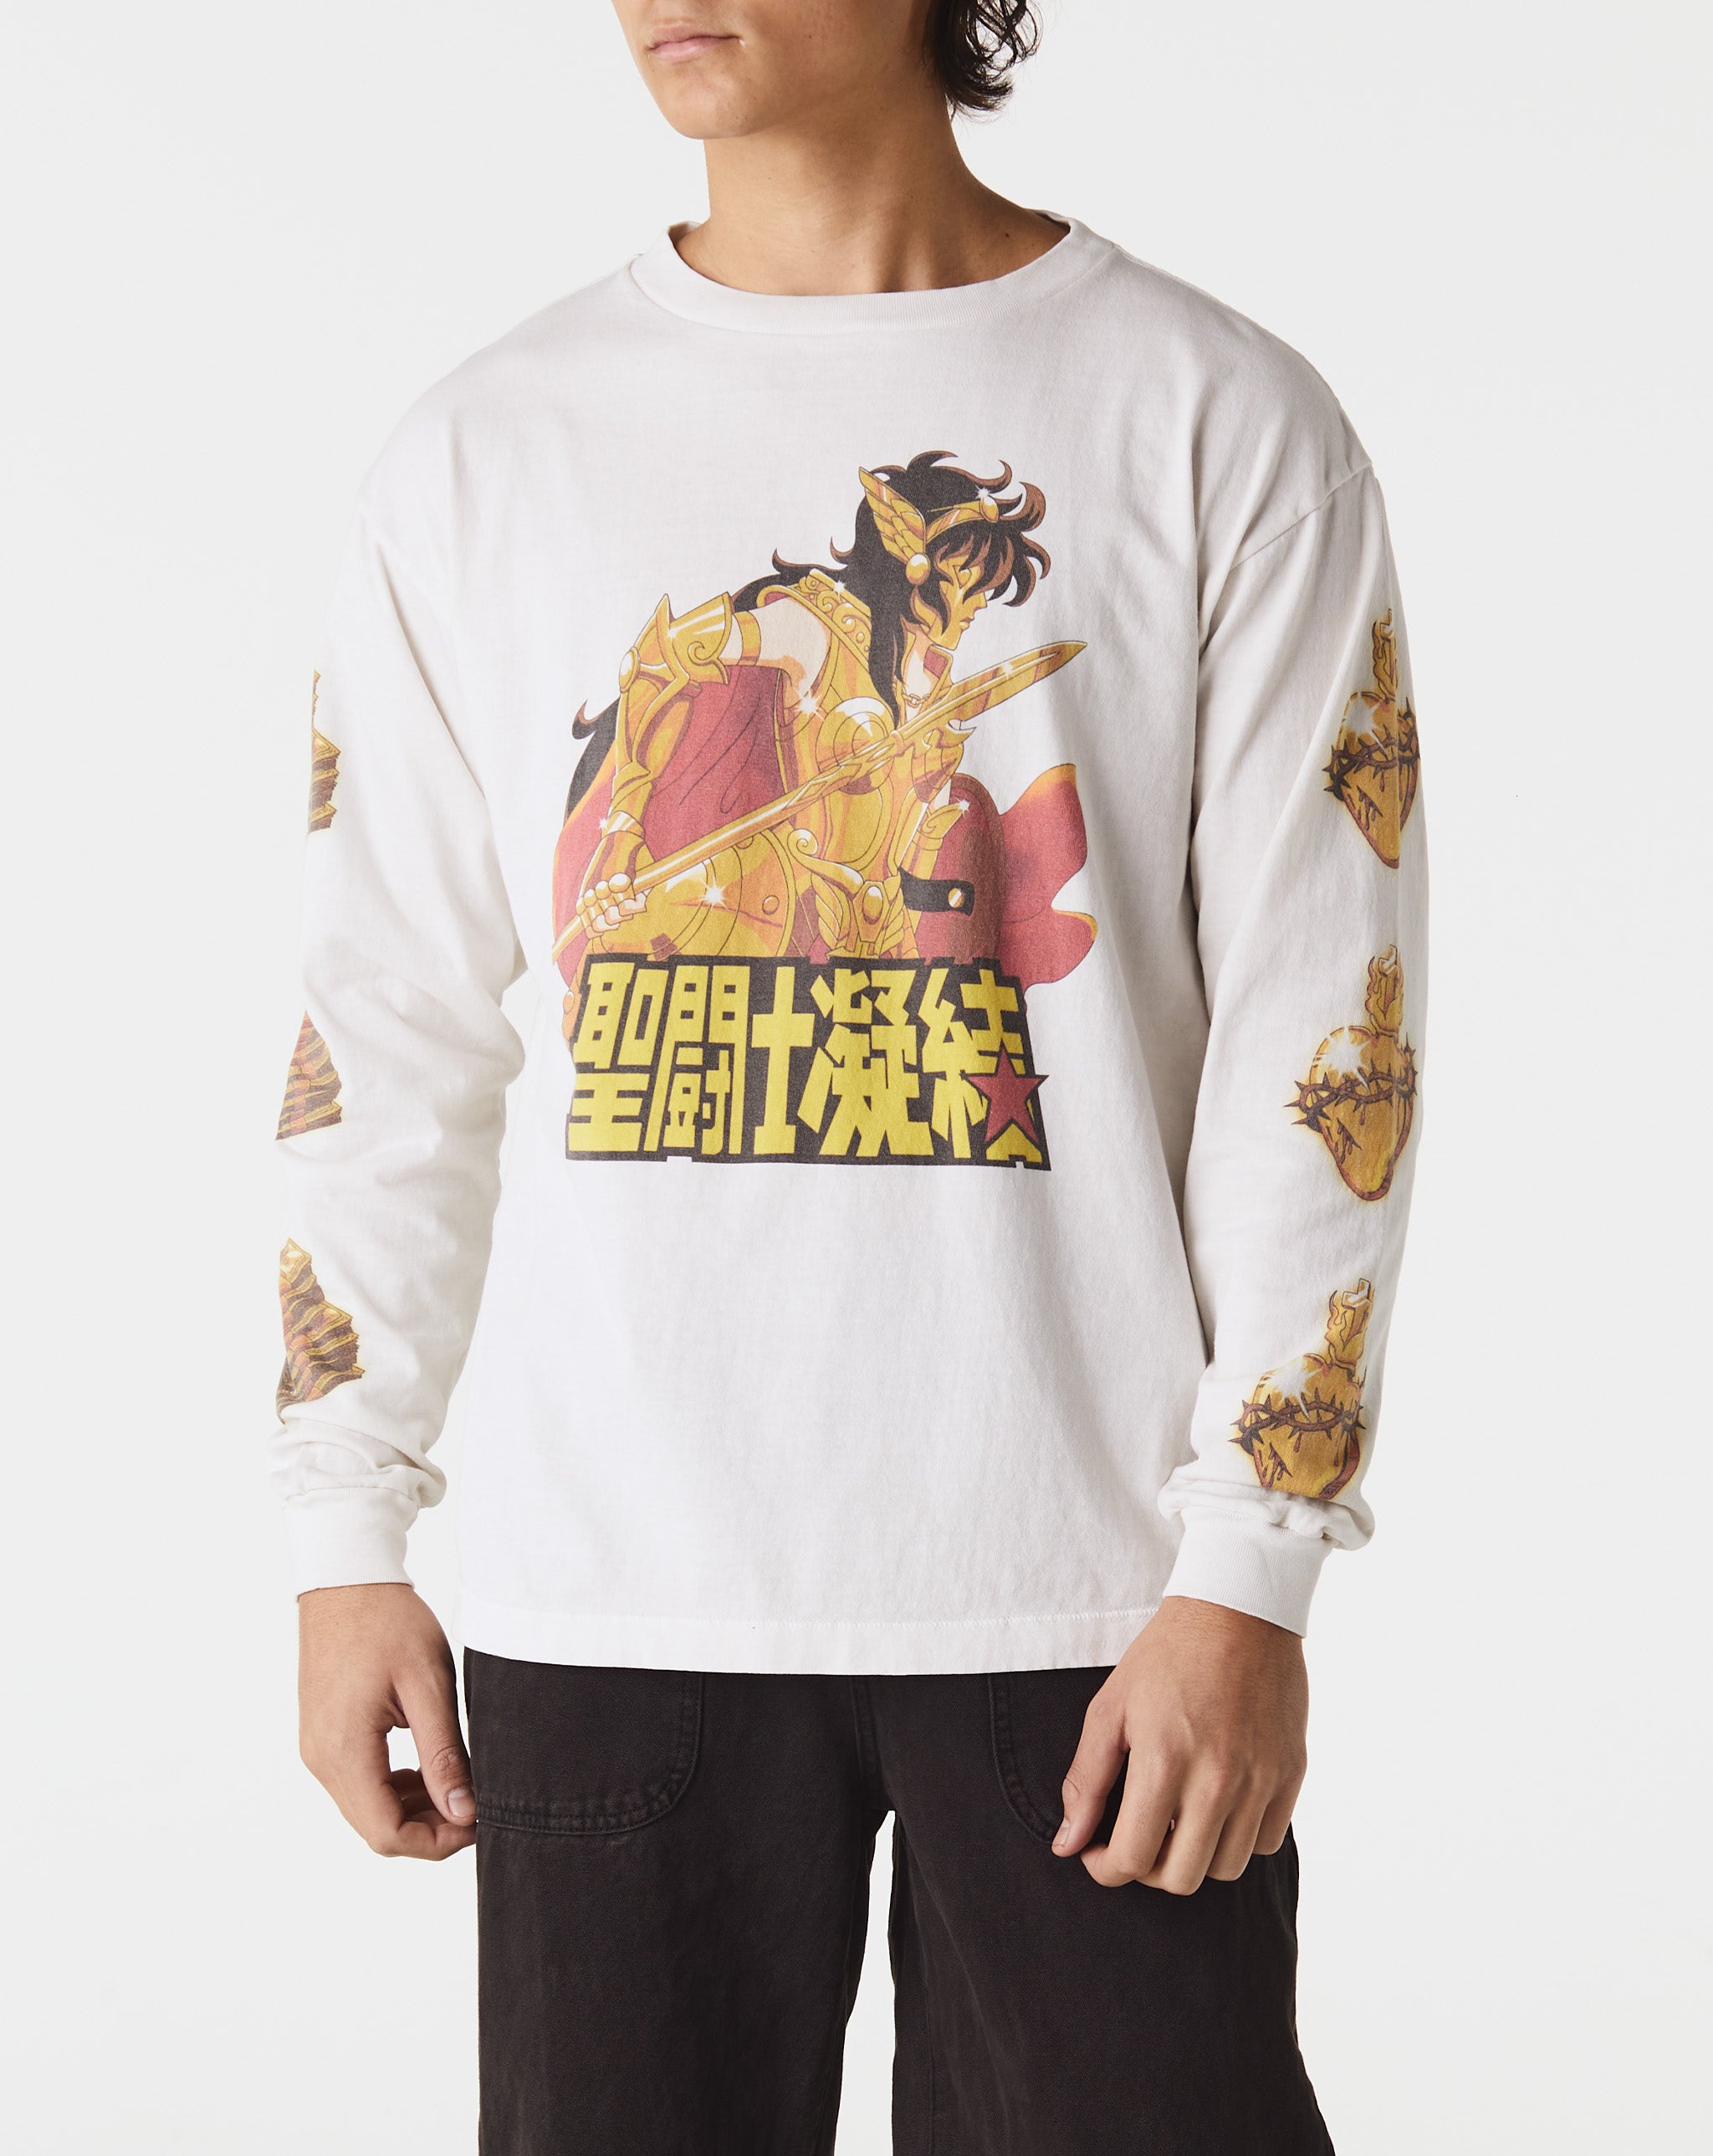 Saint Michael 聖闘士 Long Sleeve T-Shirt  - Cheap Urlfreeze Jordan outlet